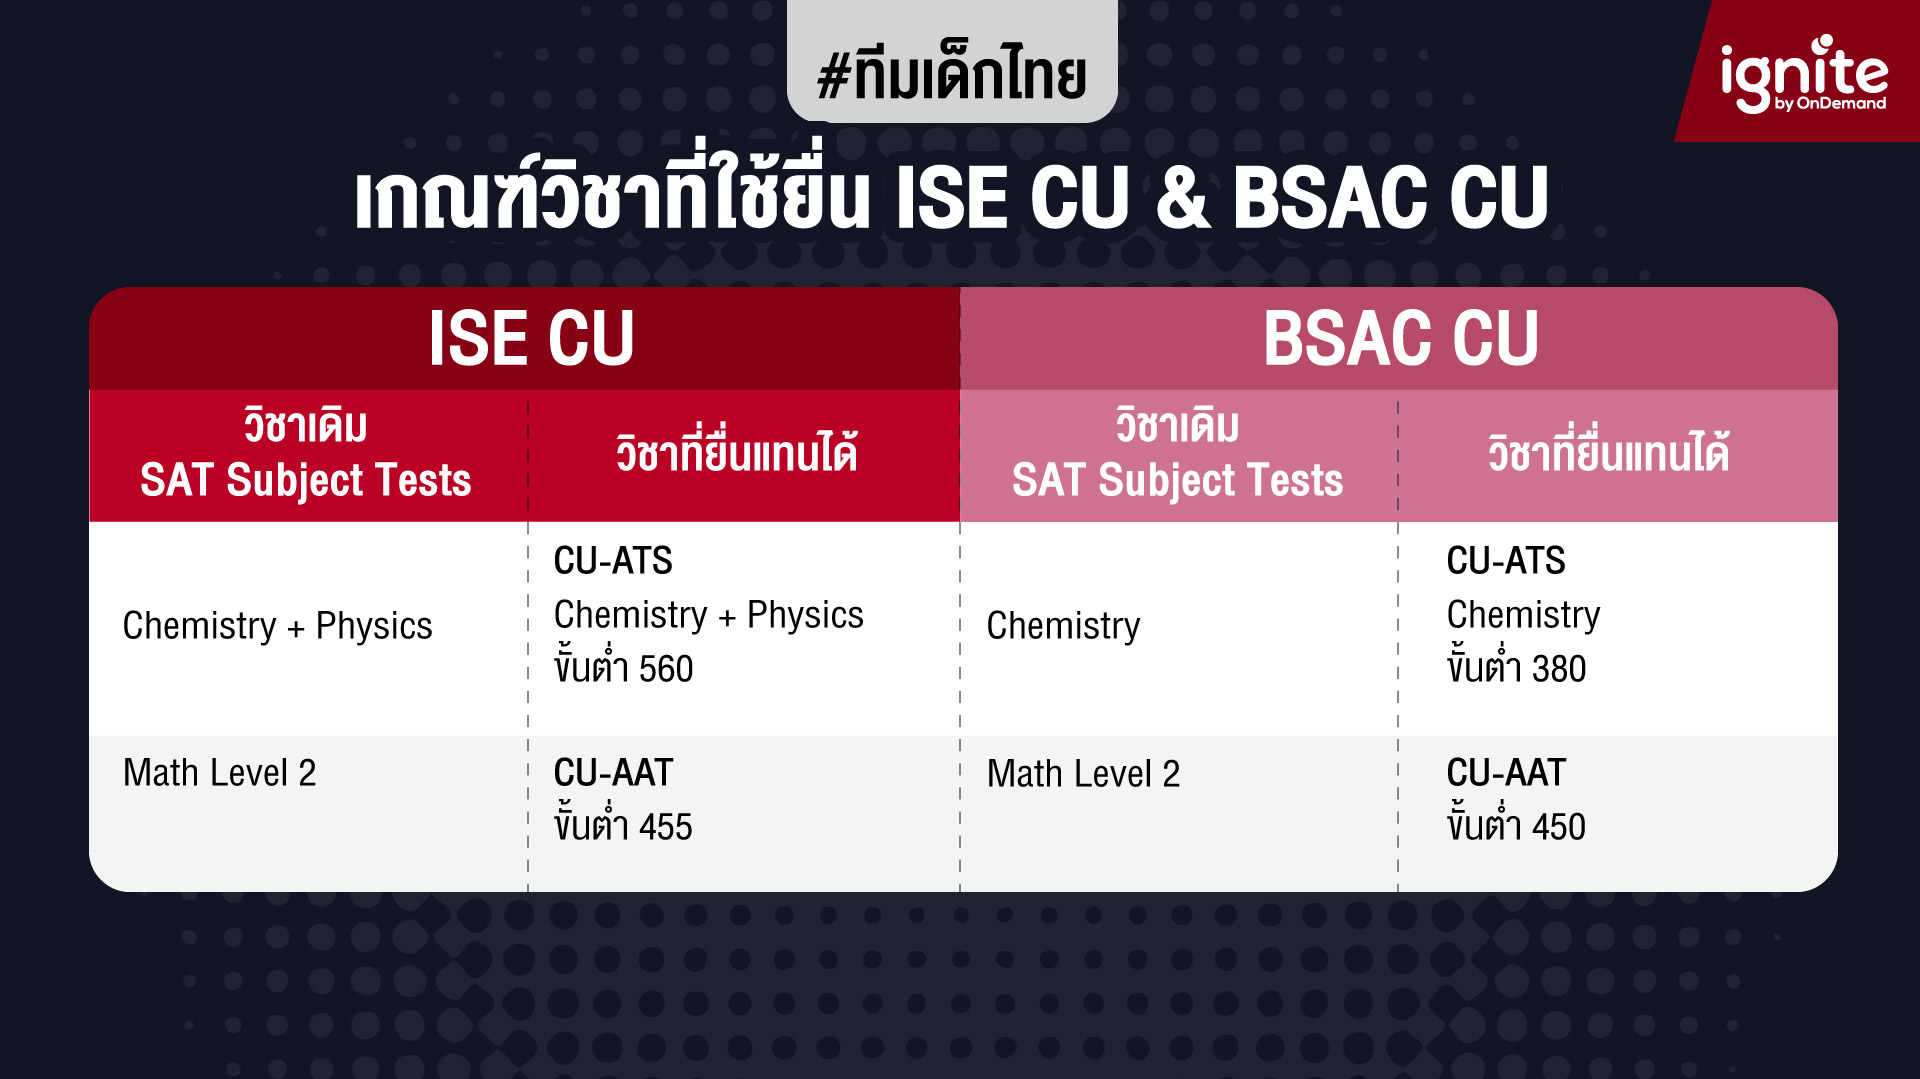 เด็กโรงเรียนไทย - เกณฑ์วิชาที่ใช้ยื่นเข้า - ise cu - bsac cu - Bigcover2